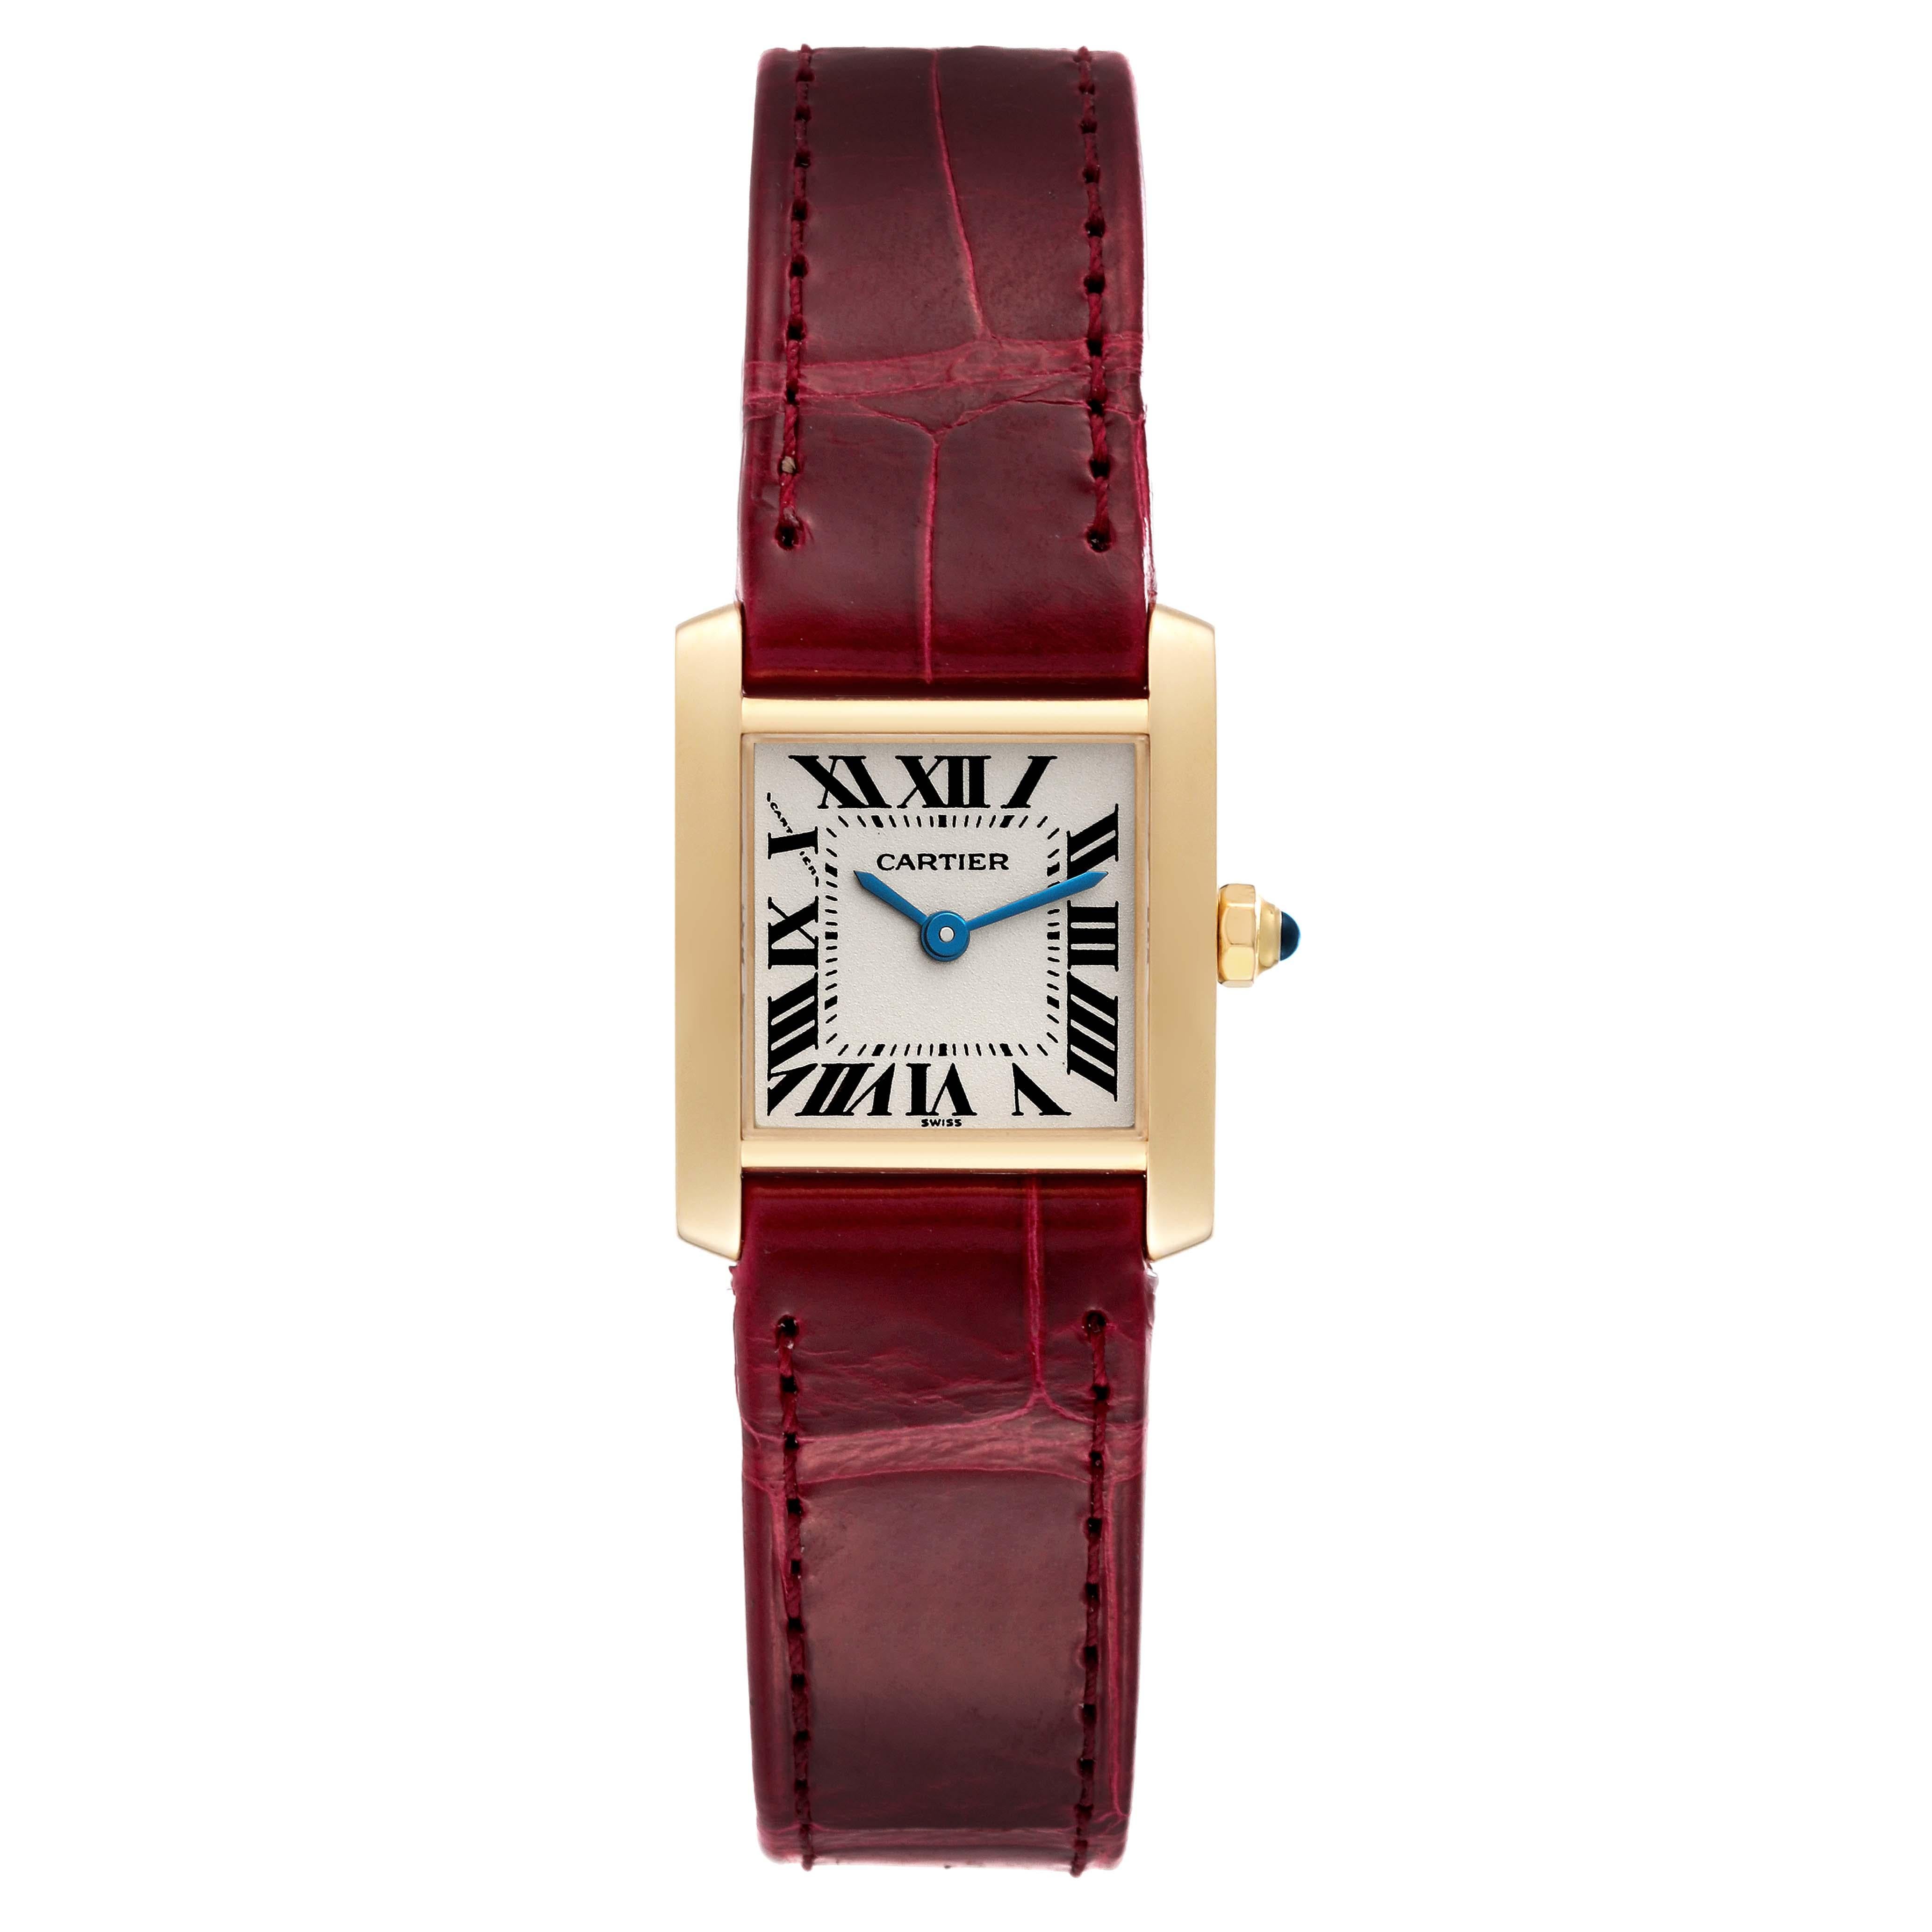 De las mujeres Reloj Cartier Tank Francaise Oro Amarillo Correa Burdeos Señora W5000256 en venta